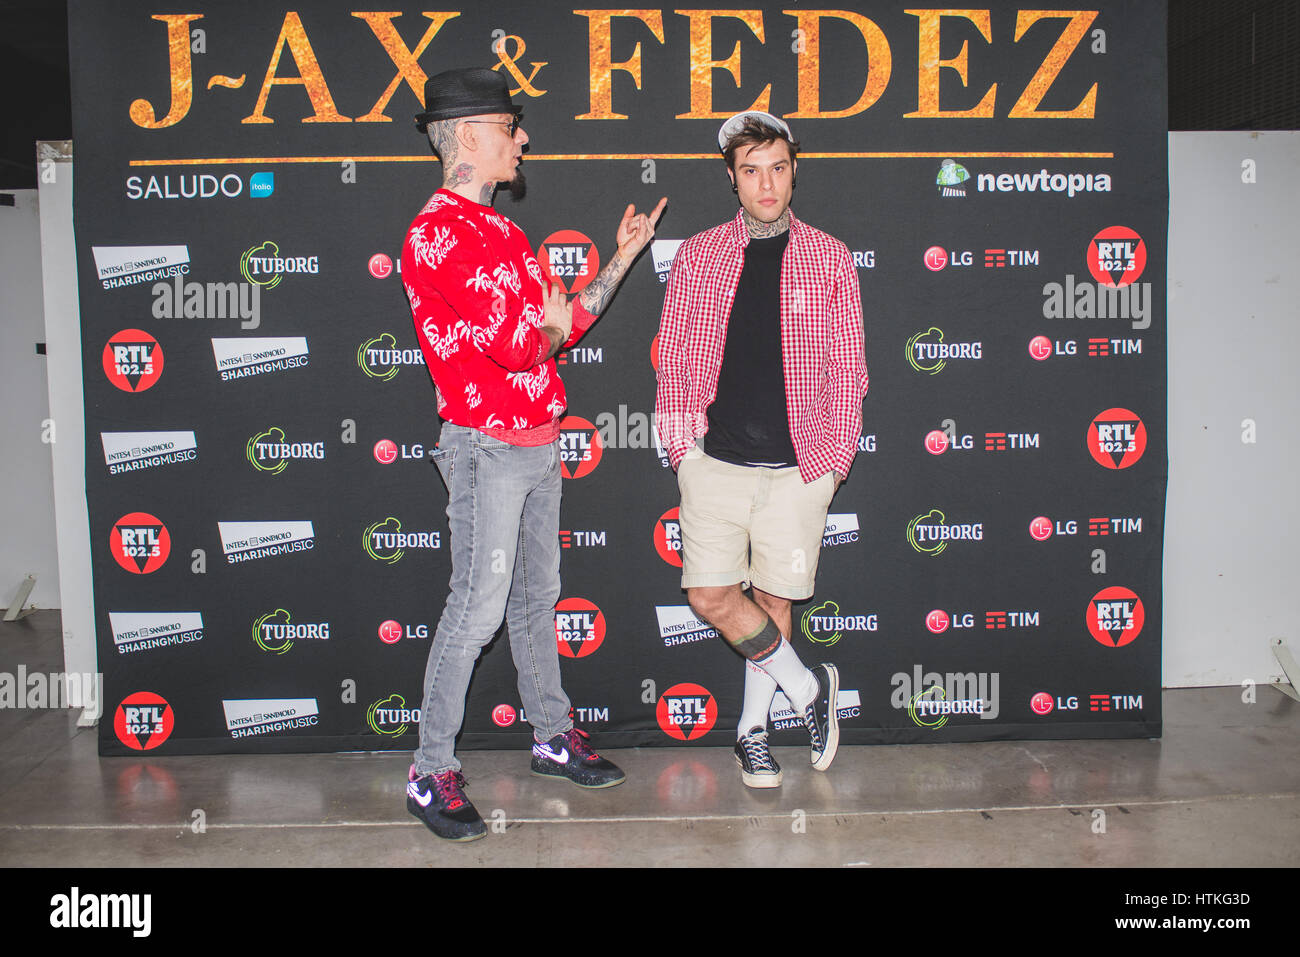 Marzo 11, 2017: el italiano de rap/hip hop cantantes J-Ax ( nombre real  Alessandro Aleotti ) y Fedex ( nombre real Federico Leonardo Lucia )  posando en el backstage en el Pala